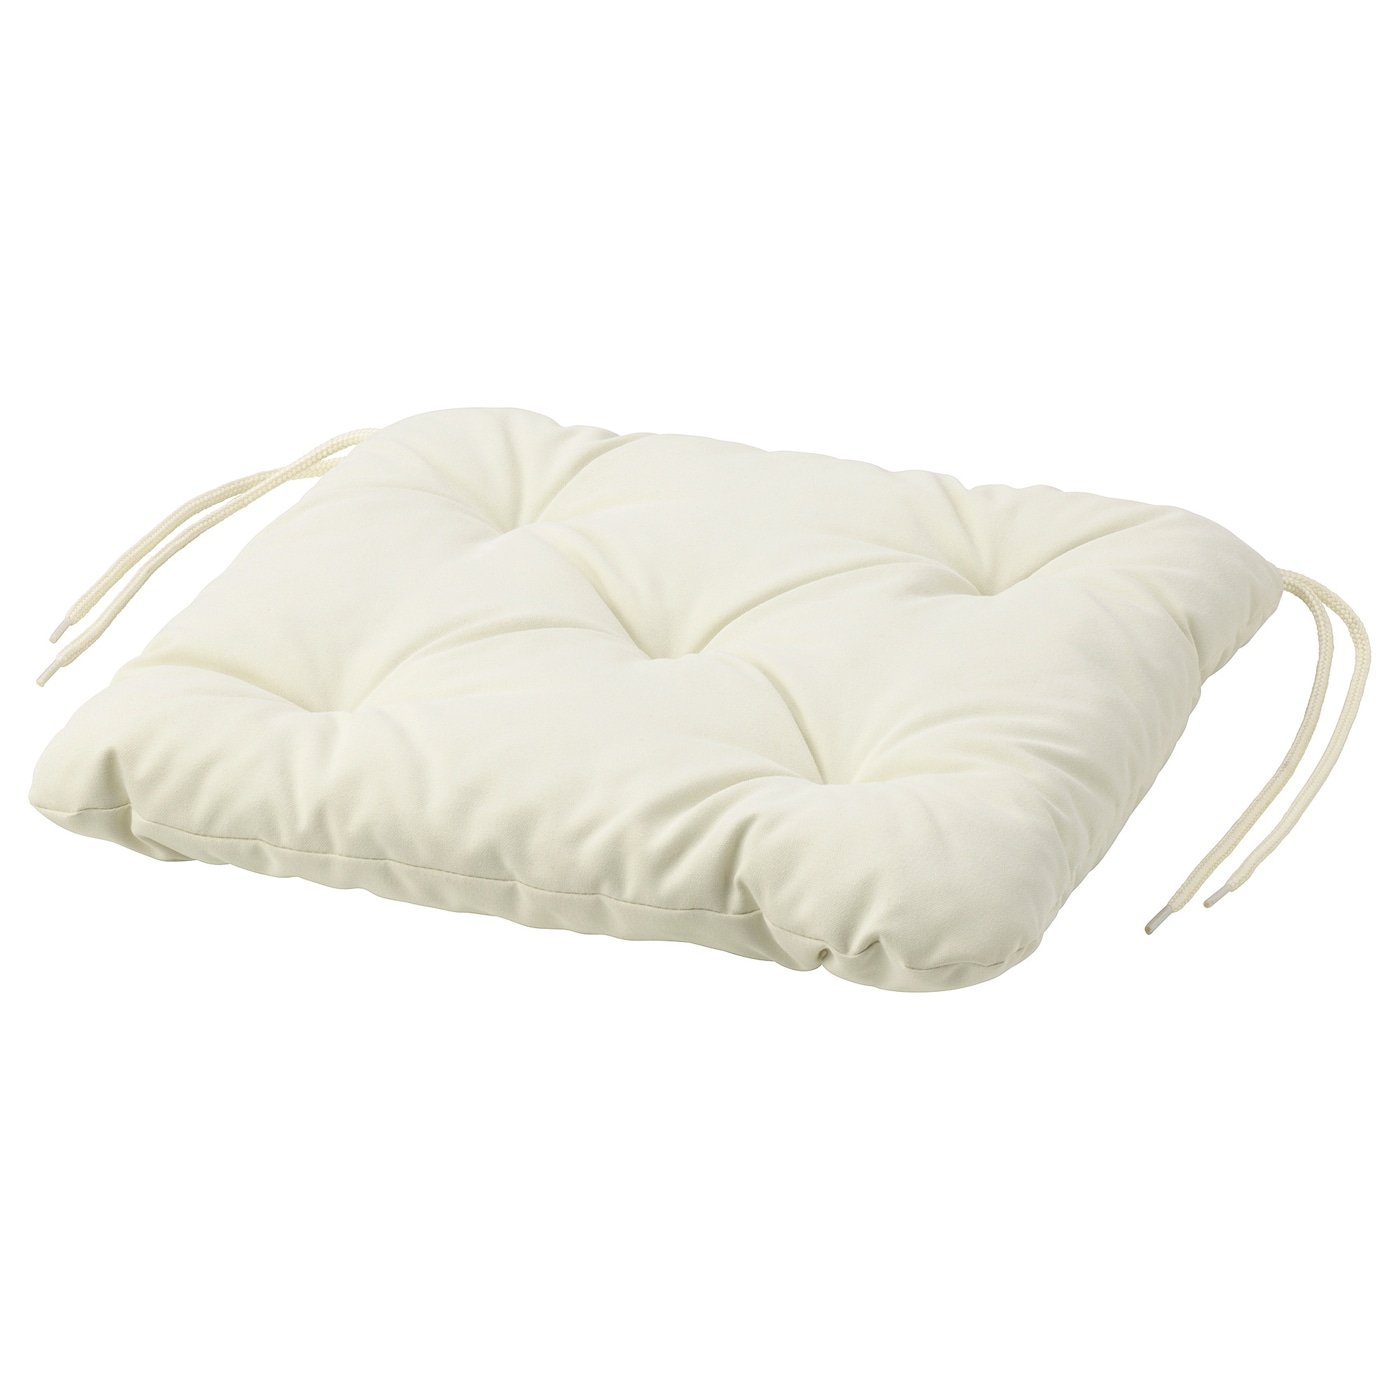 Подушка на стул  - KUDDARNA IKEA/ КУДДАРНА ИКЕА, 36х32 см,  белый